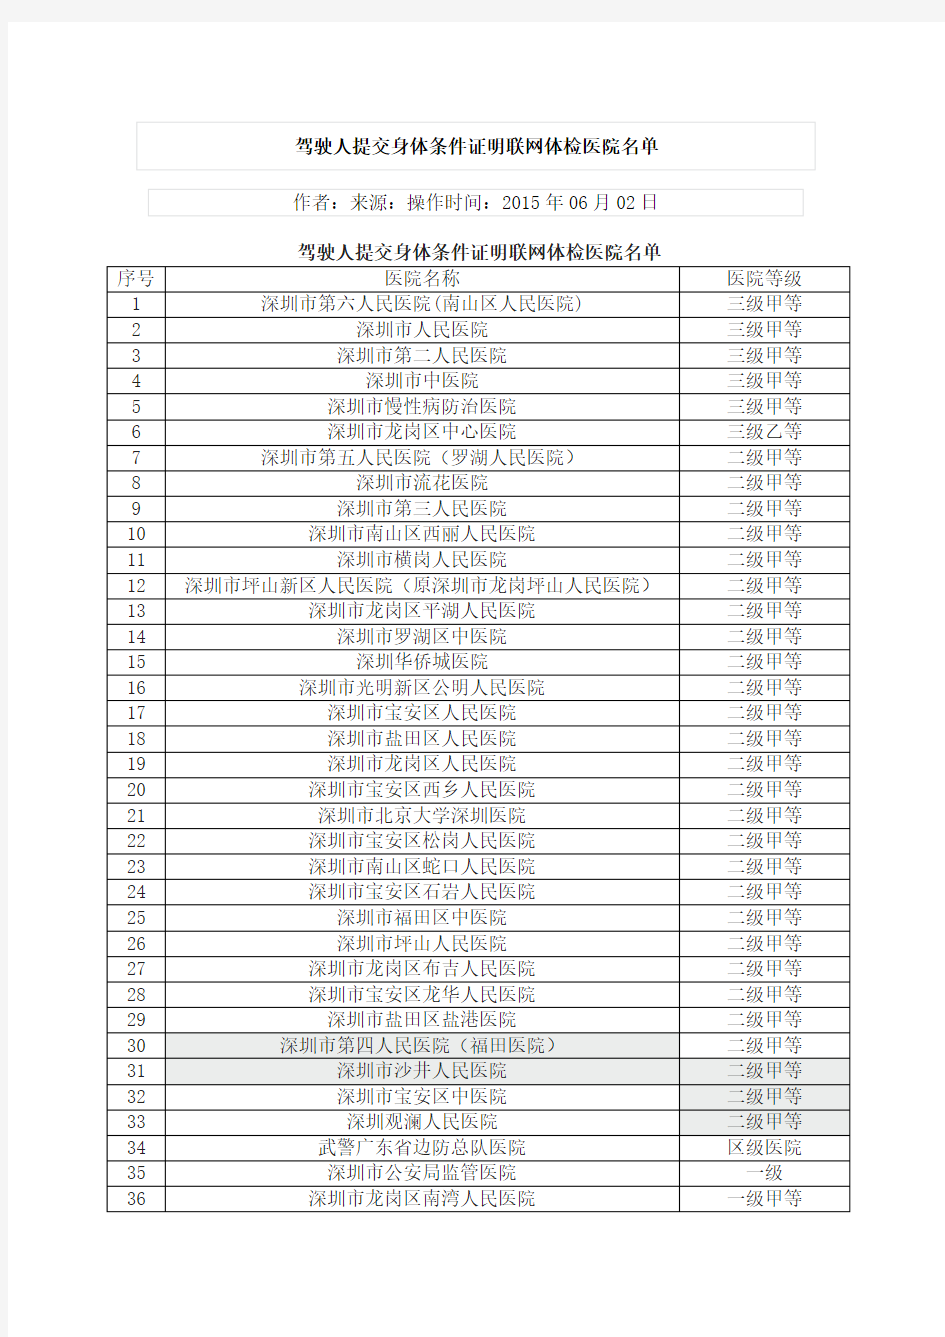 深圳市驾驶人提交身体条件证明联网体检医院名单